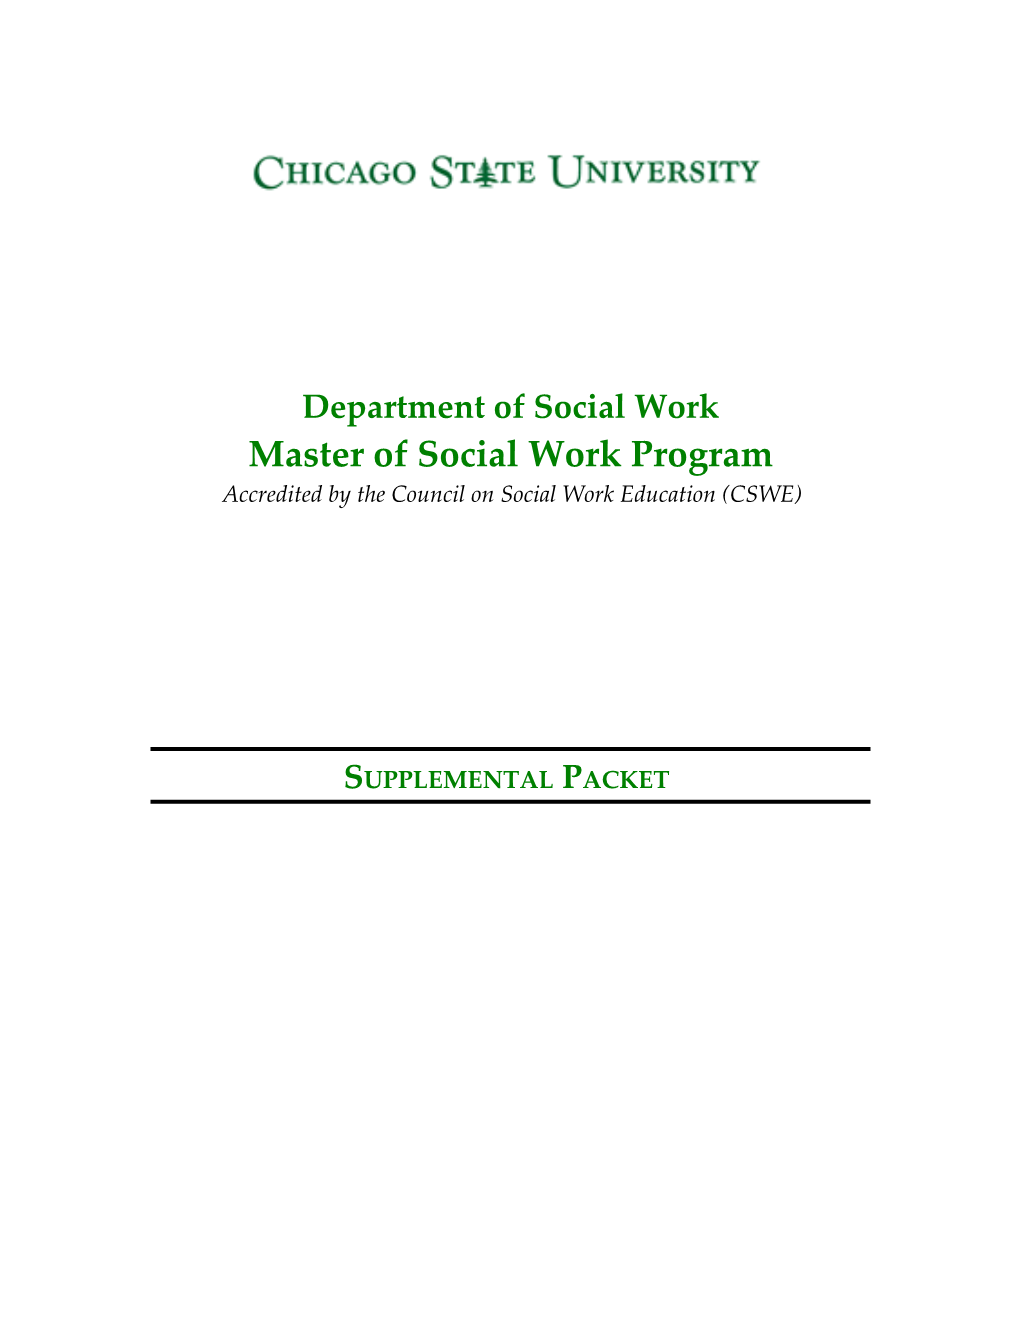 Master of Social Work Program